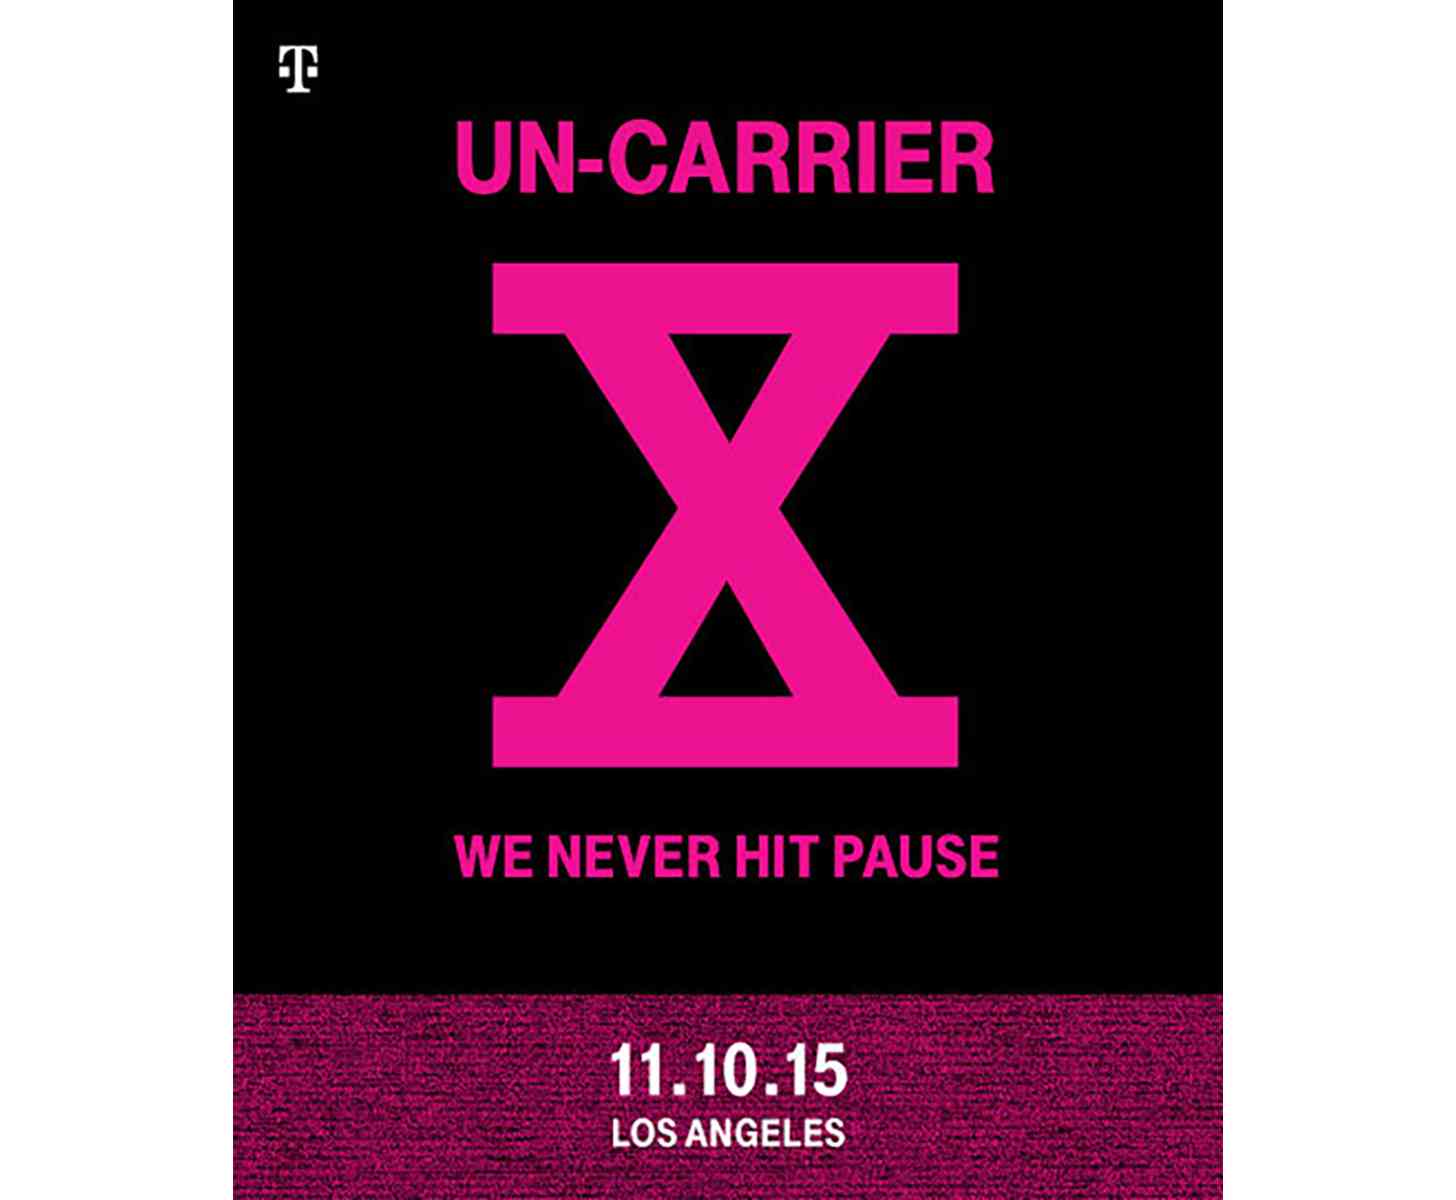 T-Mobile Un-carrier X invite